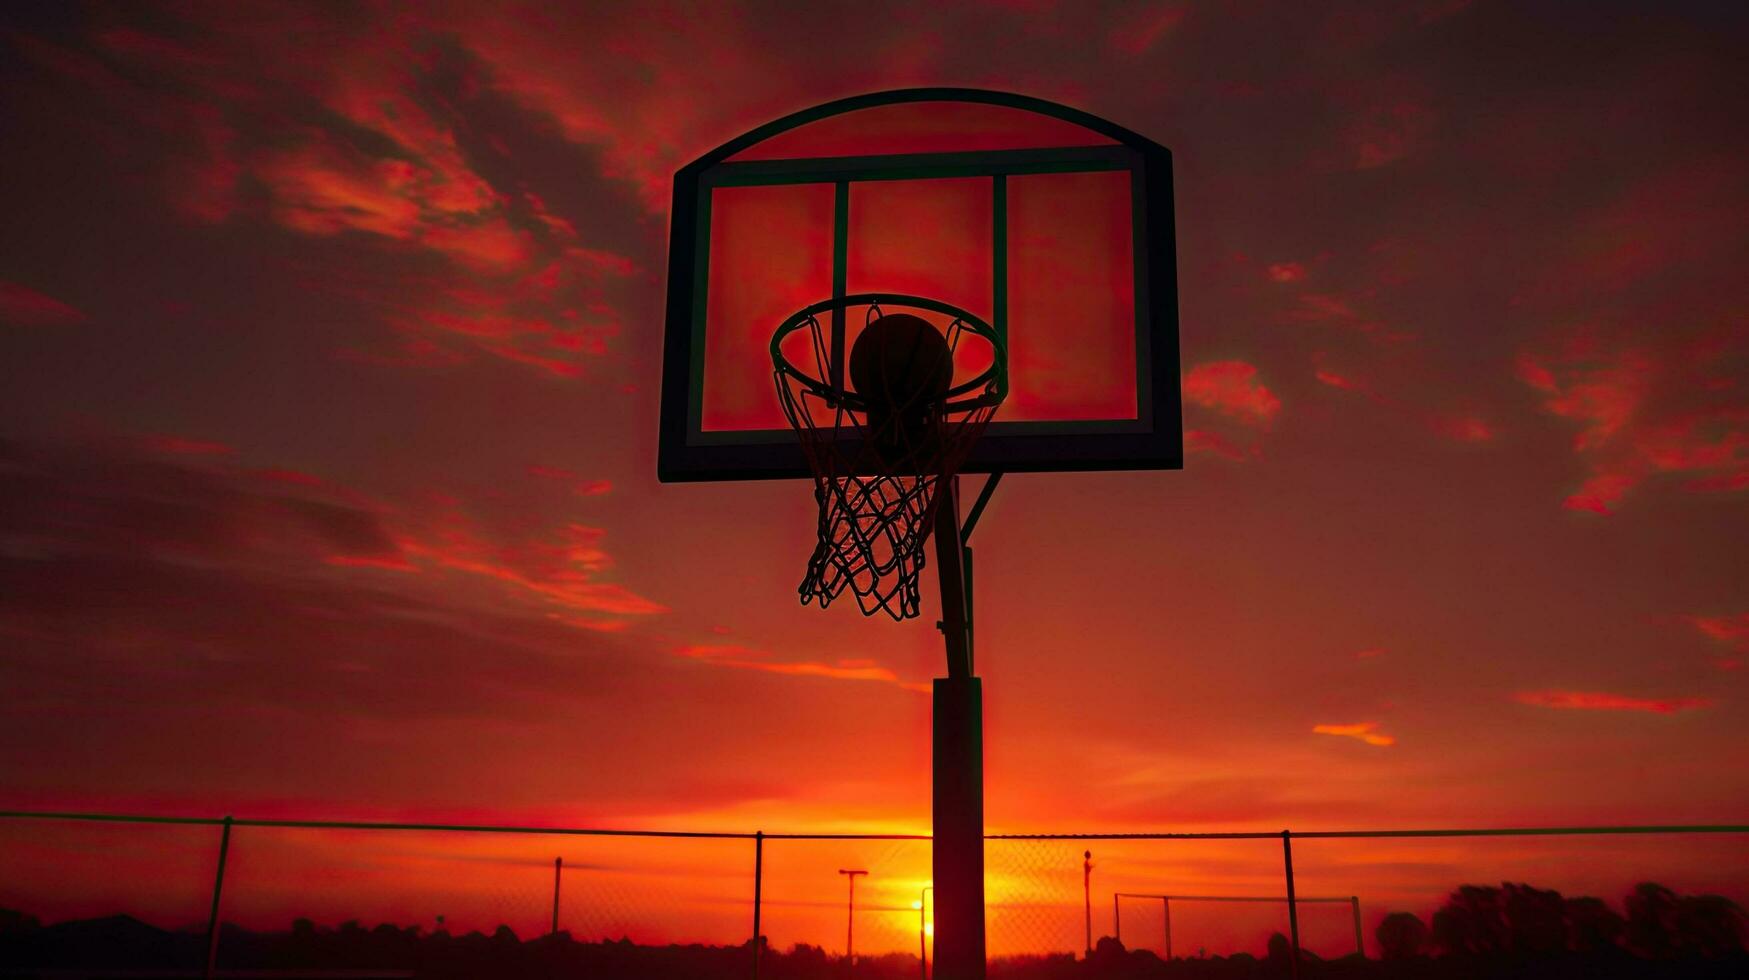 ideal papel de parede com silhueta do configuração Sol dentro basquetebol aro foto